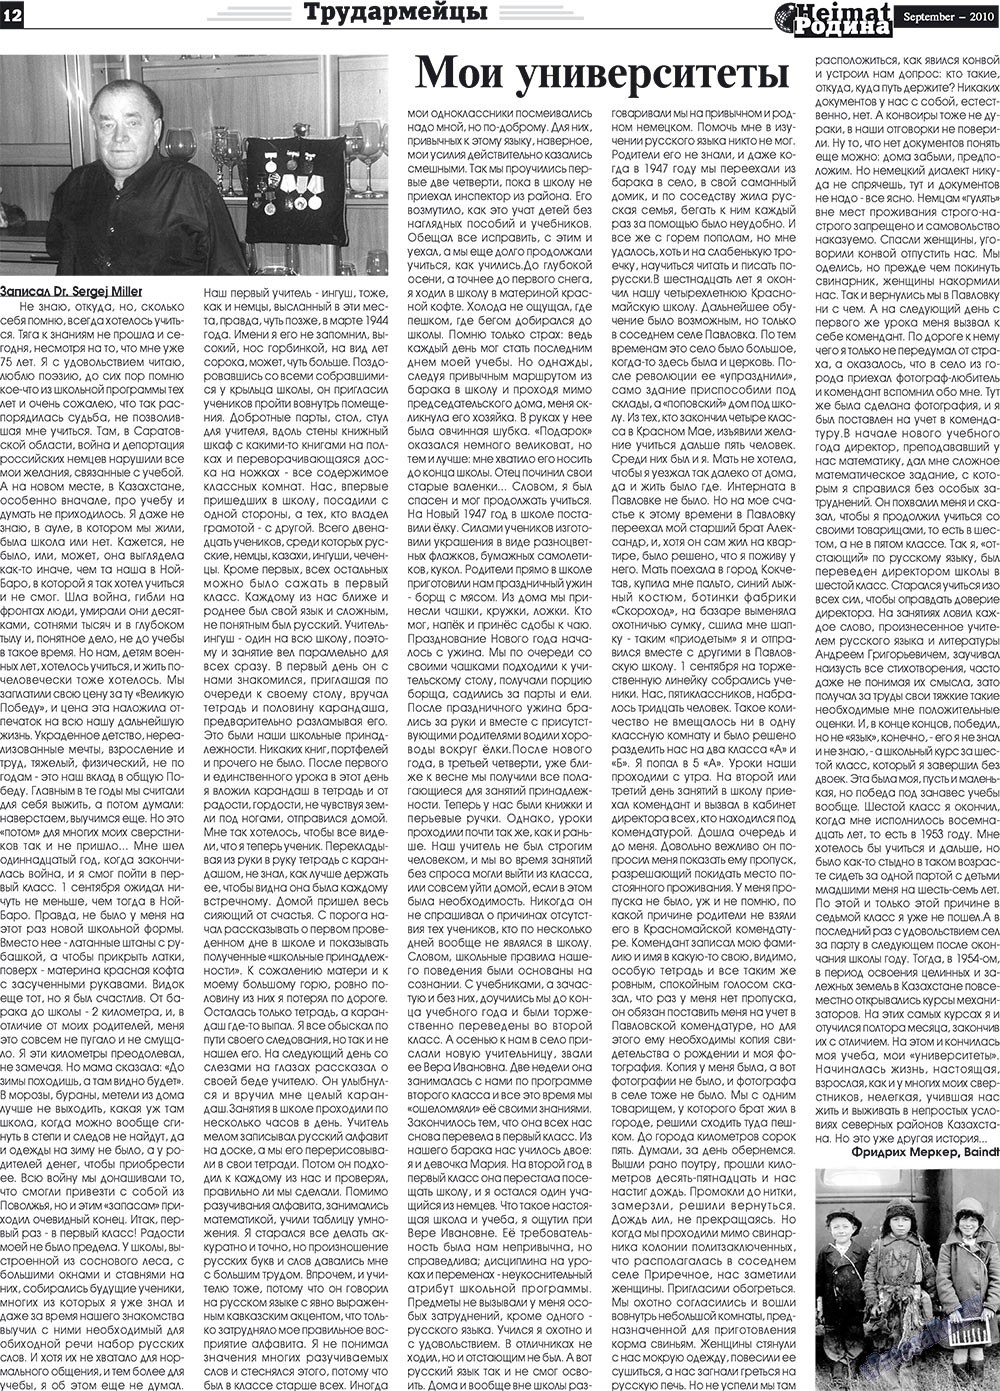 Heimat-Родина (газета). 2010 год, номер 9, стр. 12